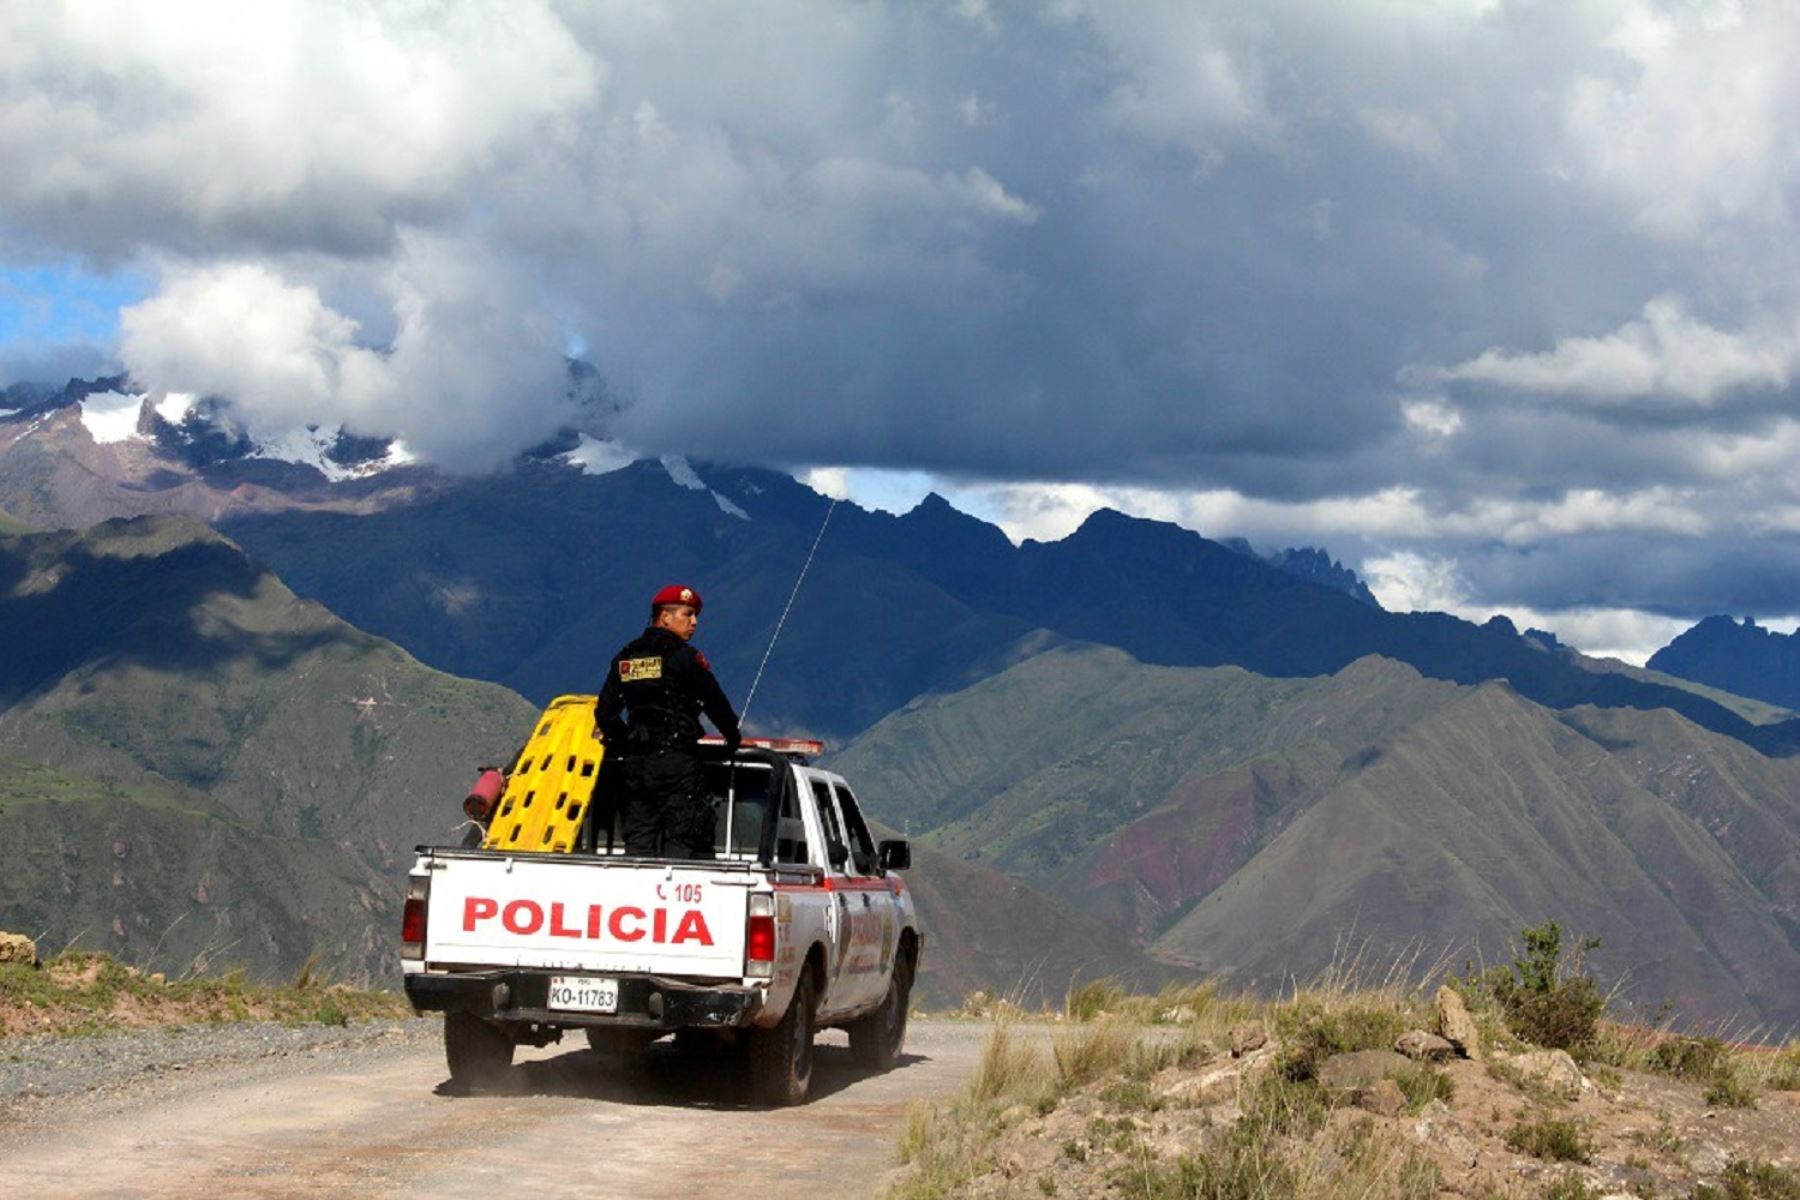 Policía continúa búsqueda de ciudadana española Nathaly Salazar desaparecida en Cusco. ANDINA/Percy Hurtado